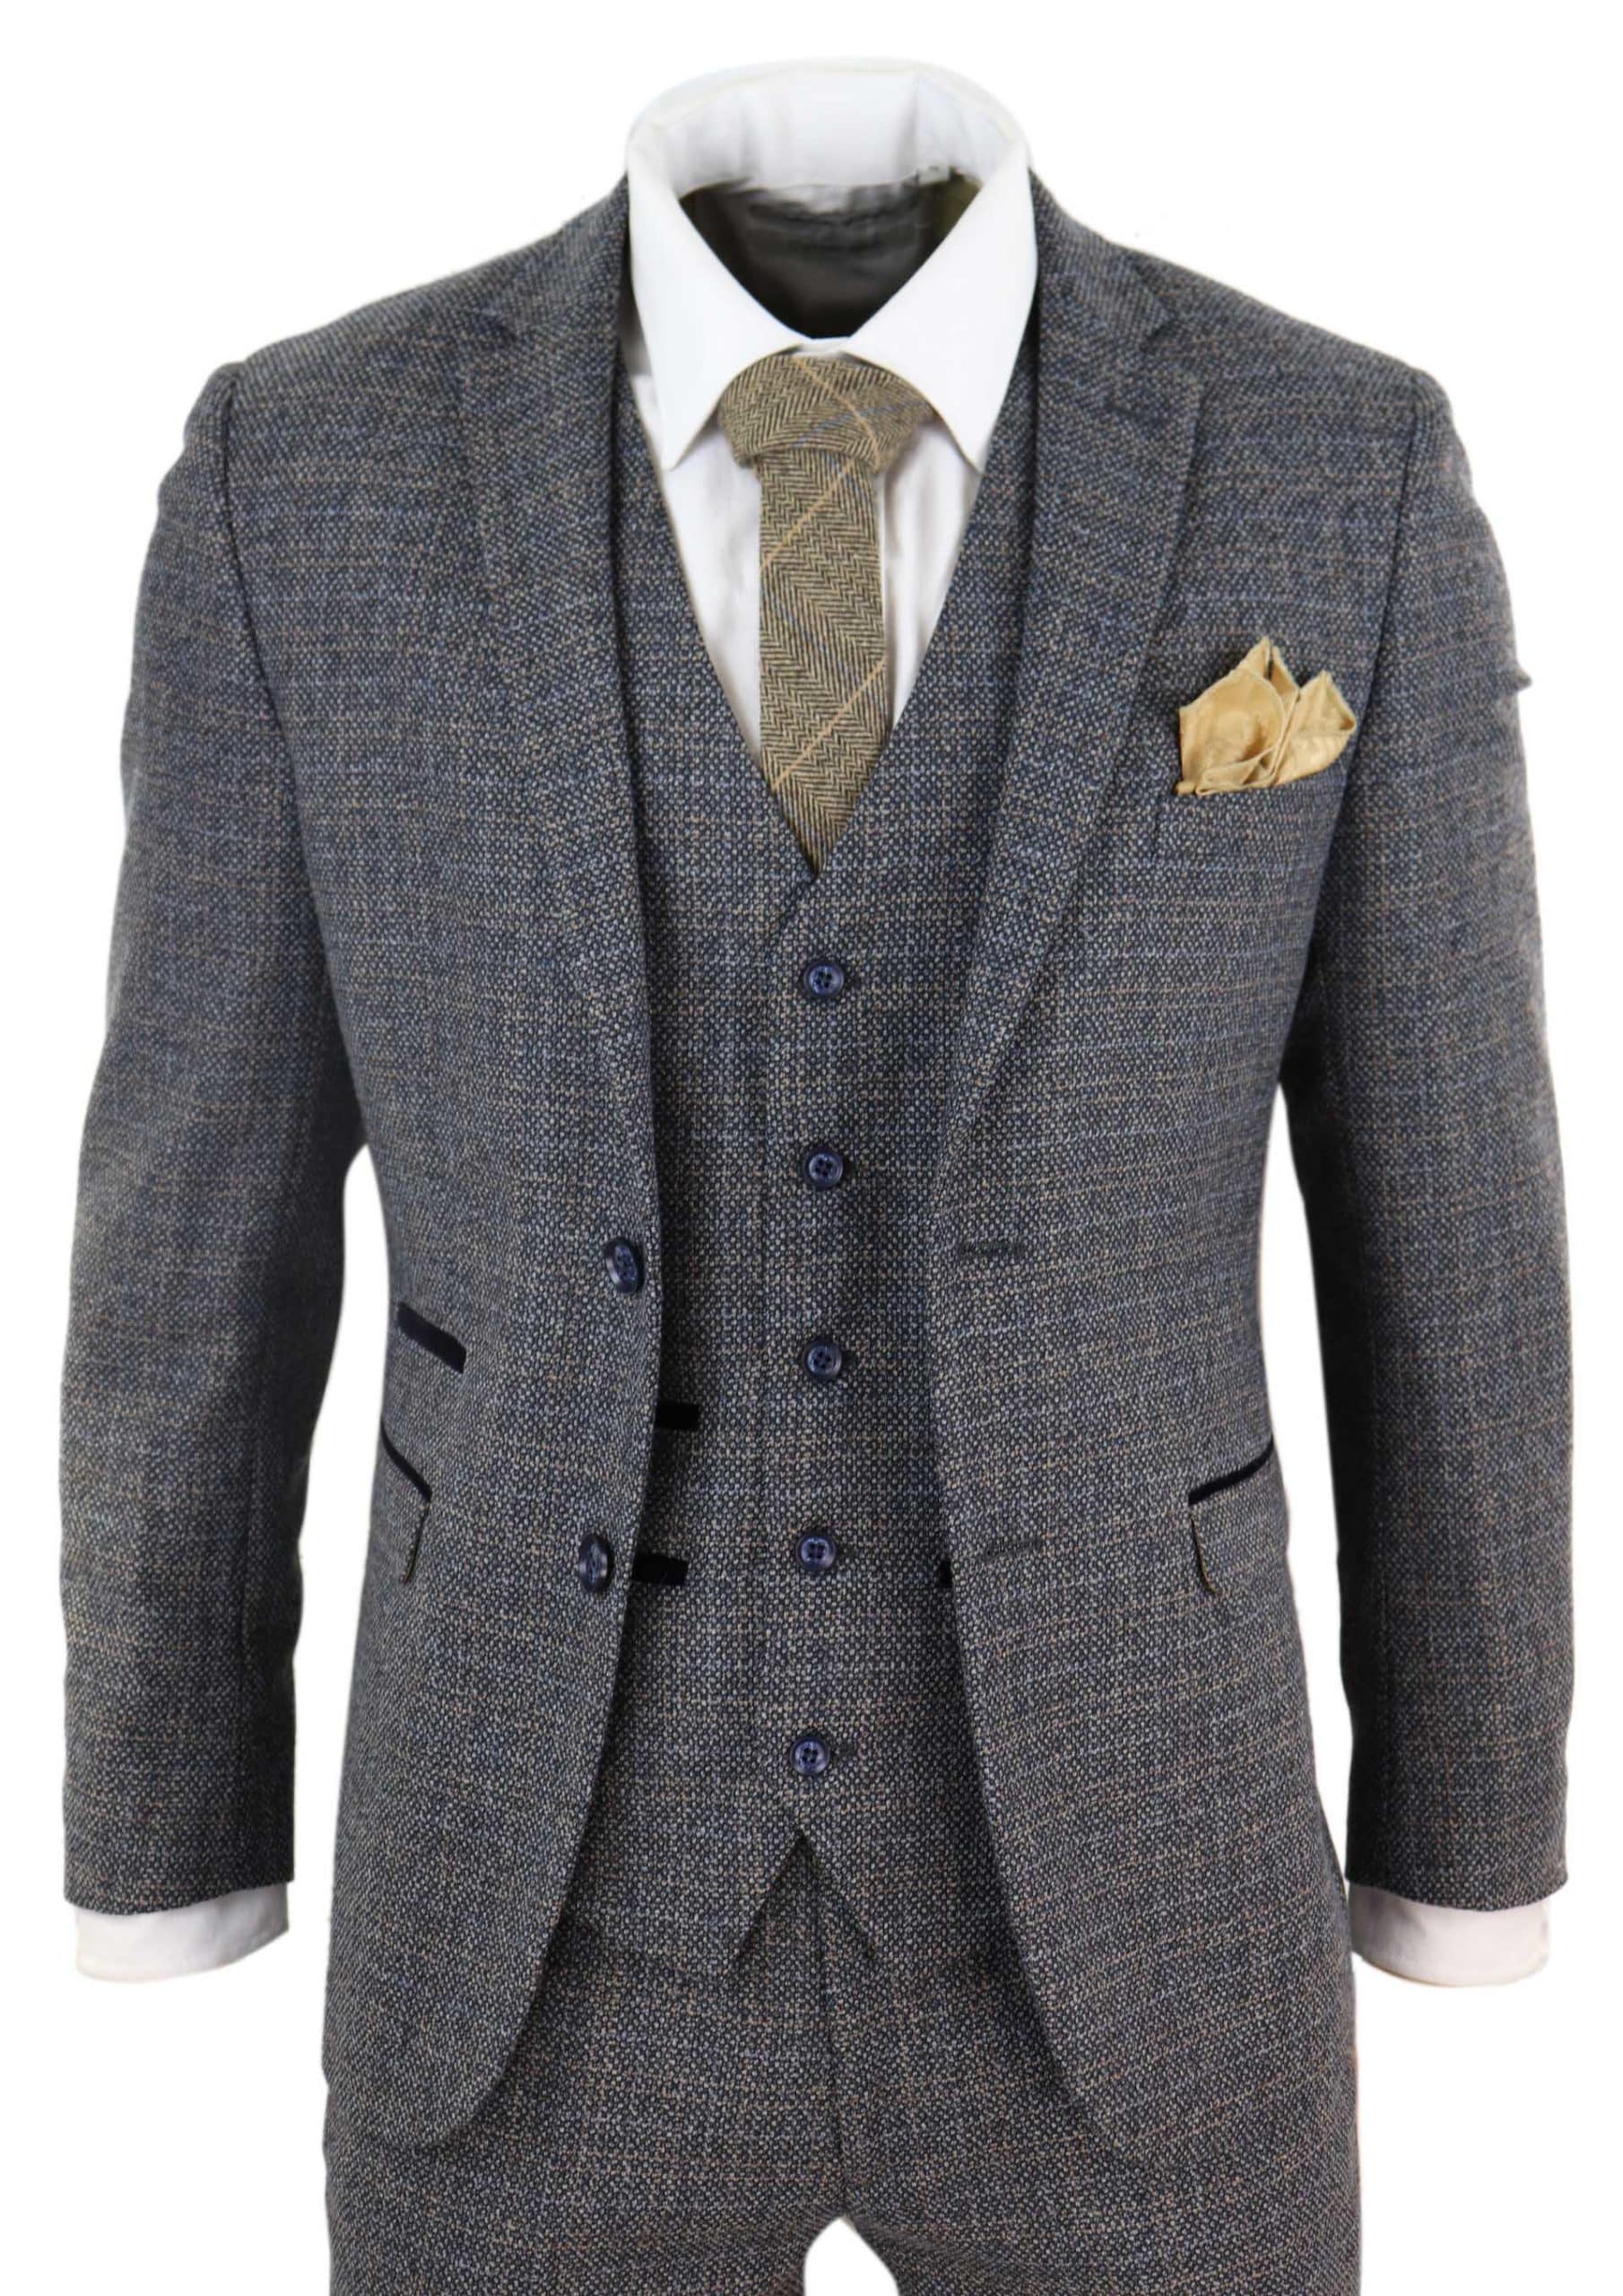 Mens Wool 3 Piece Check Suit Tweed Navy Grey Tailored Fit Peaky Blinders 1920s 